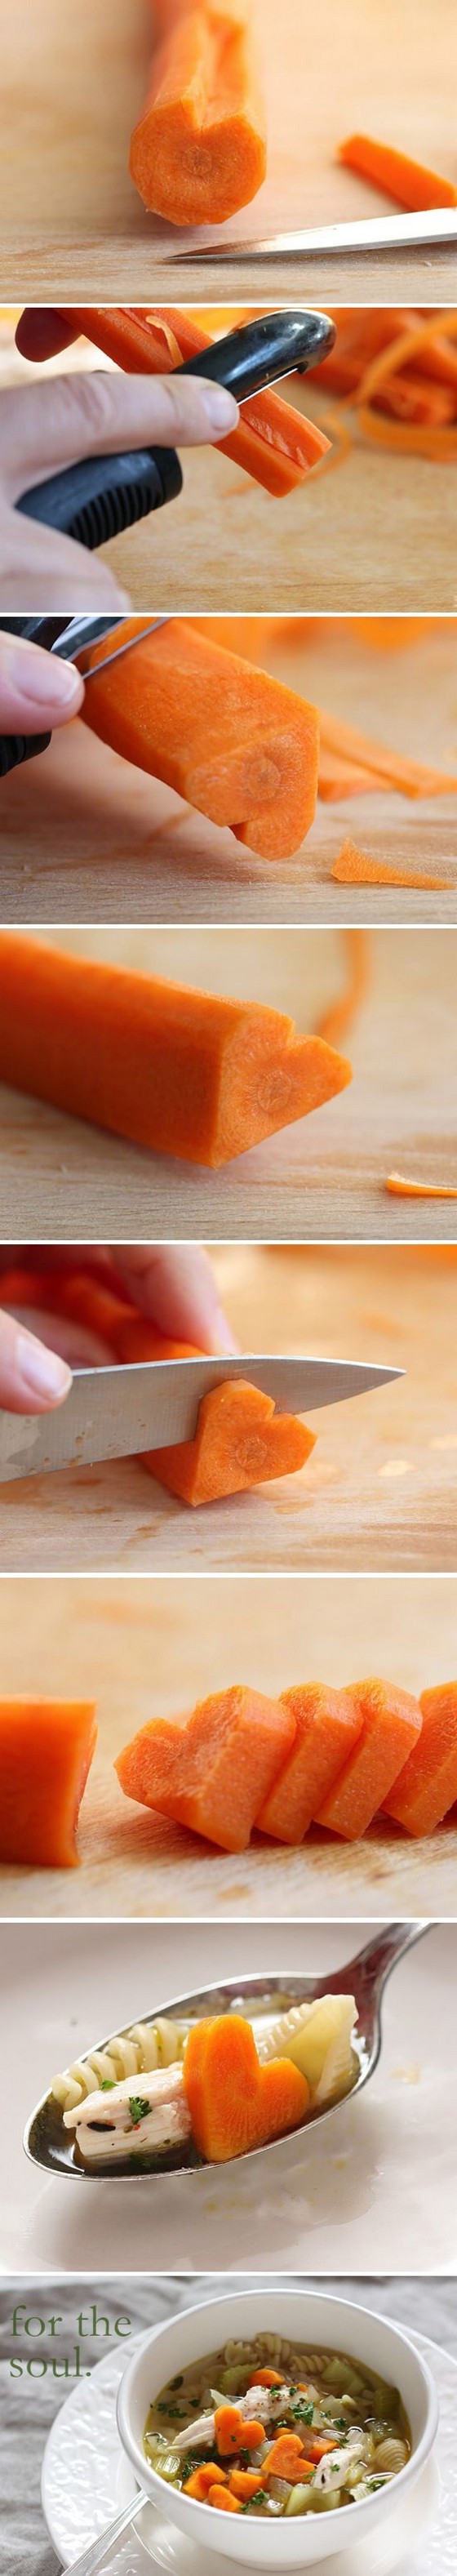 Heart Shaped Carrots recipe photo